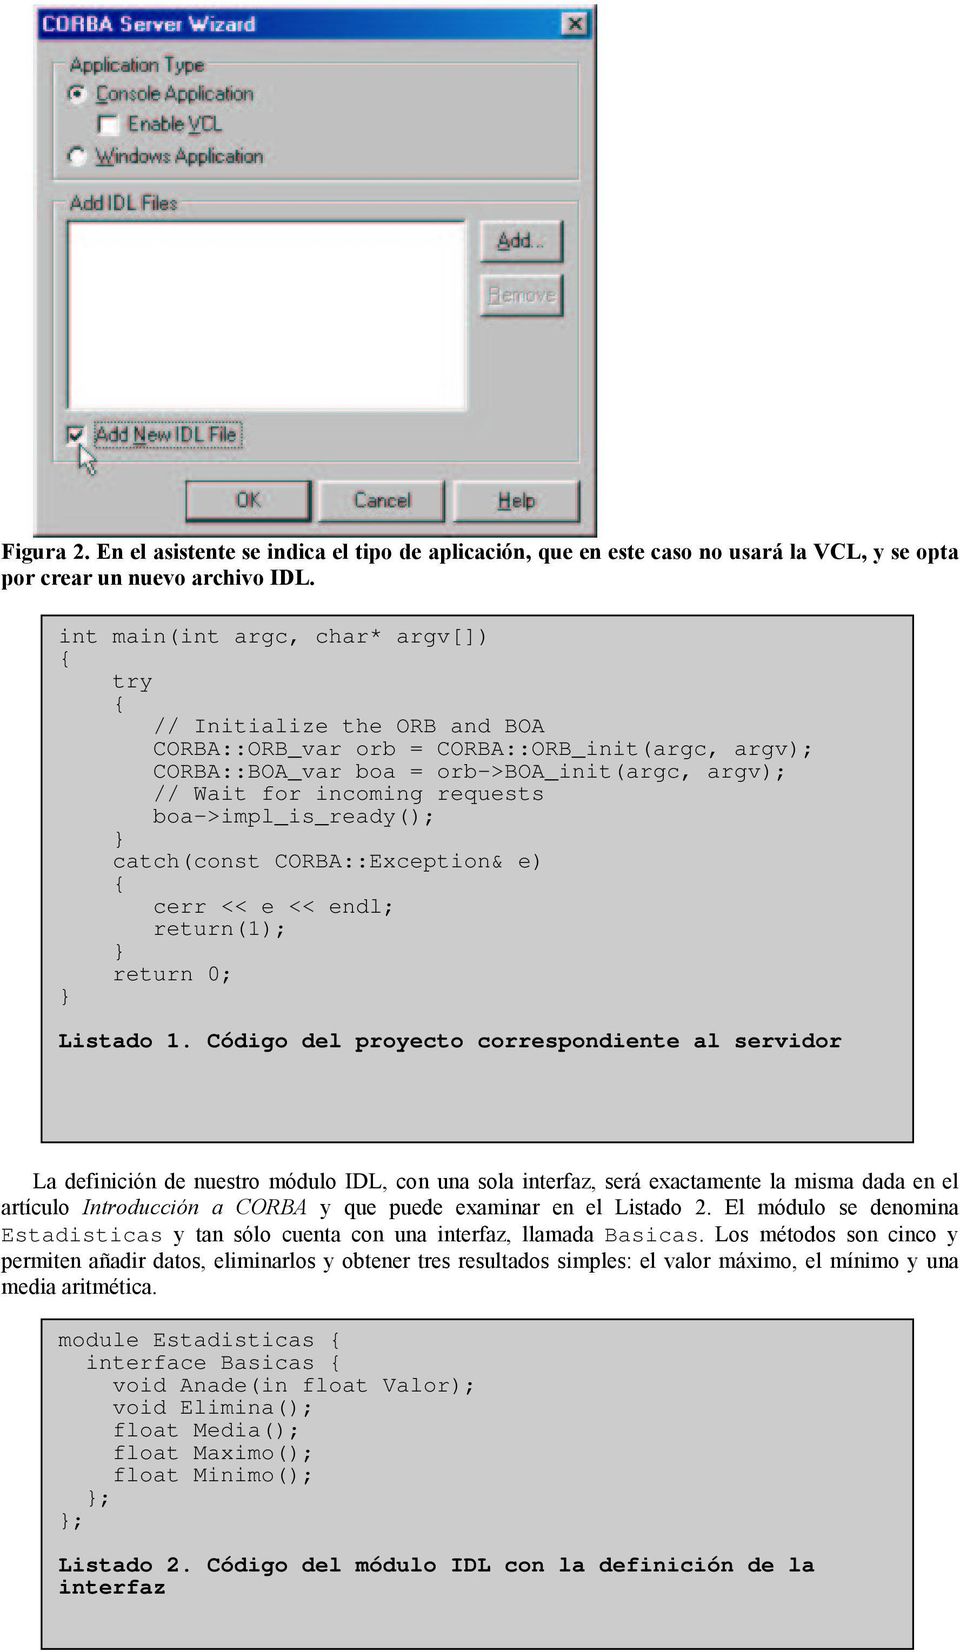 Listado 1. Código del proyecto correspondiente al servidor ( &'()!) " 7 # 7 (* Estadisticas#!) Basicas( : #?